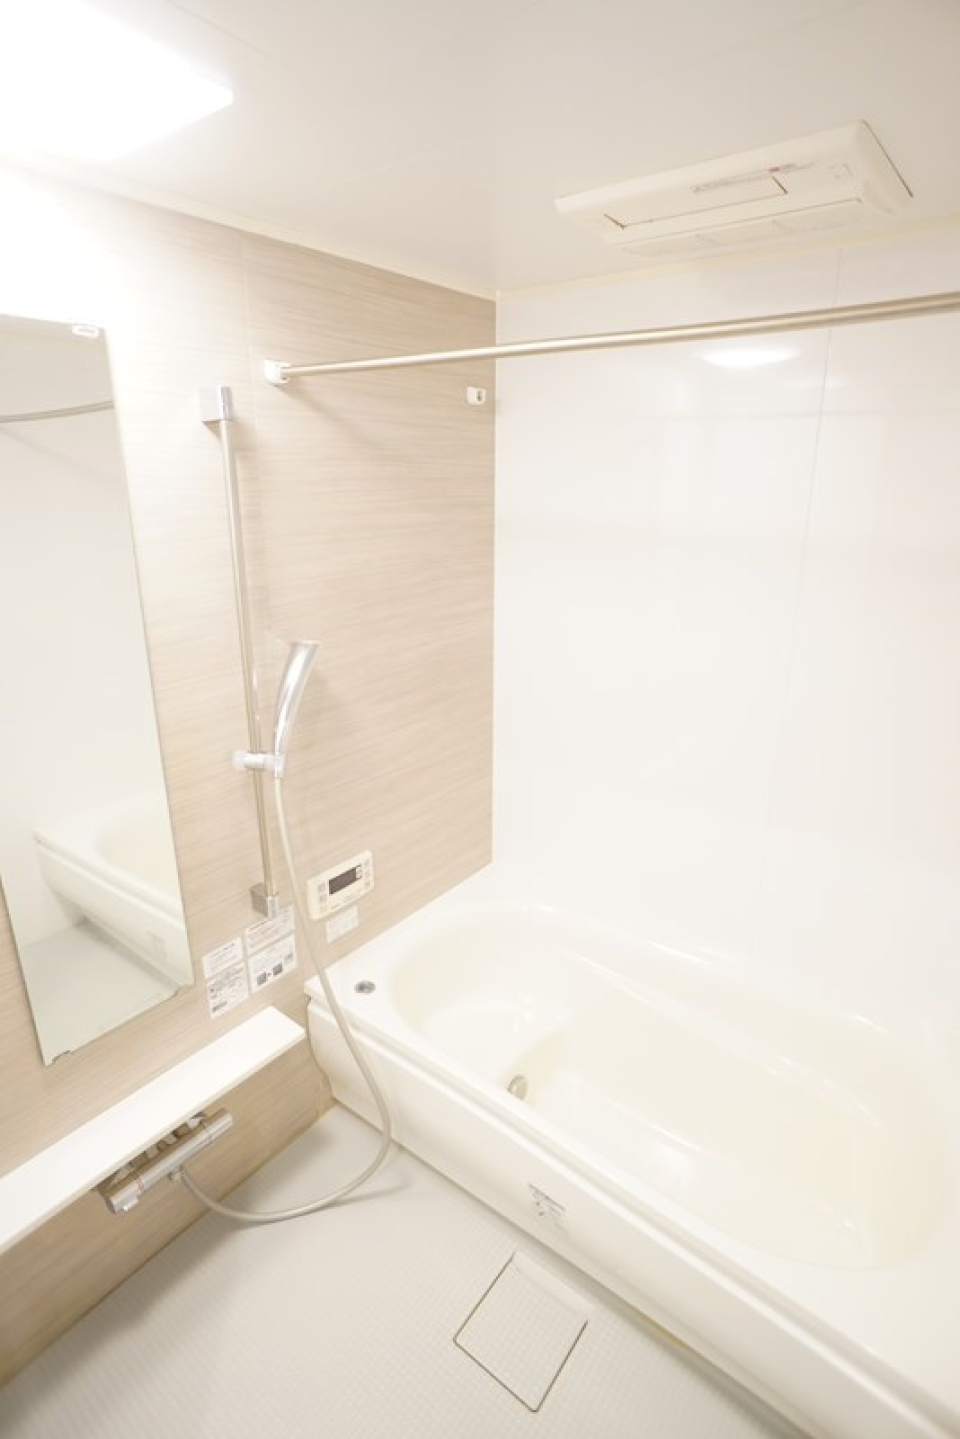 大きな鏡のついた真っ白なお風呂。
シャワーカーテンを付けられる突っ張り棒もあります。物干しざおとしても使えそうですね！